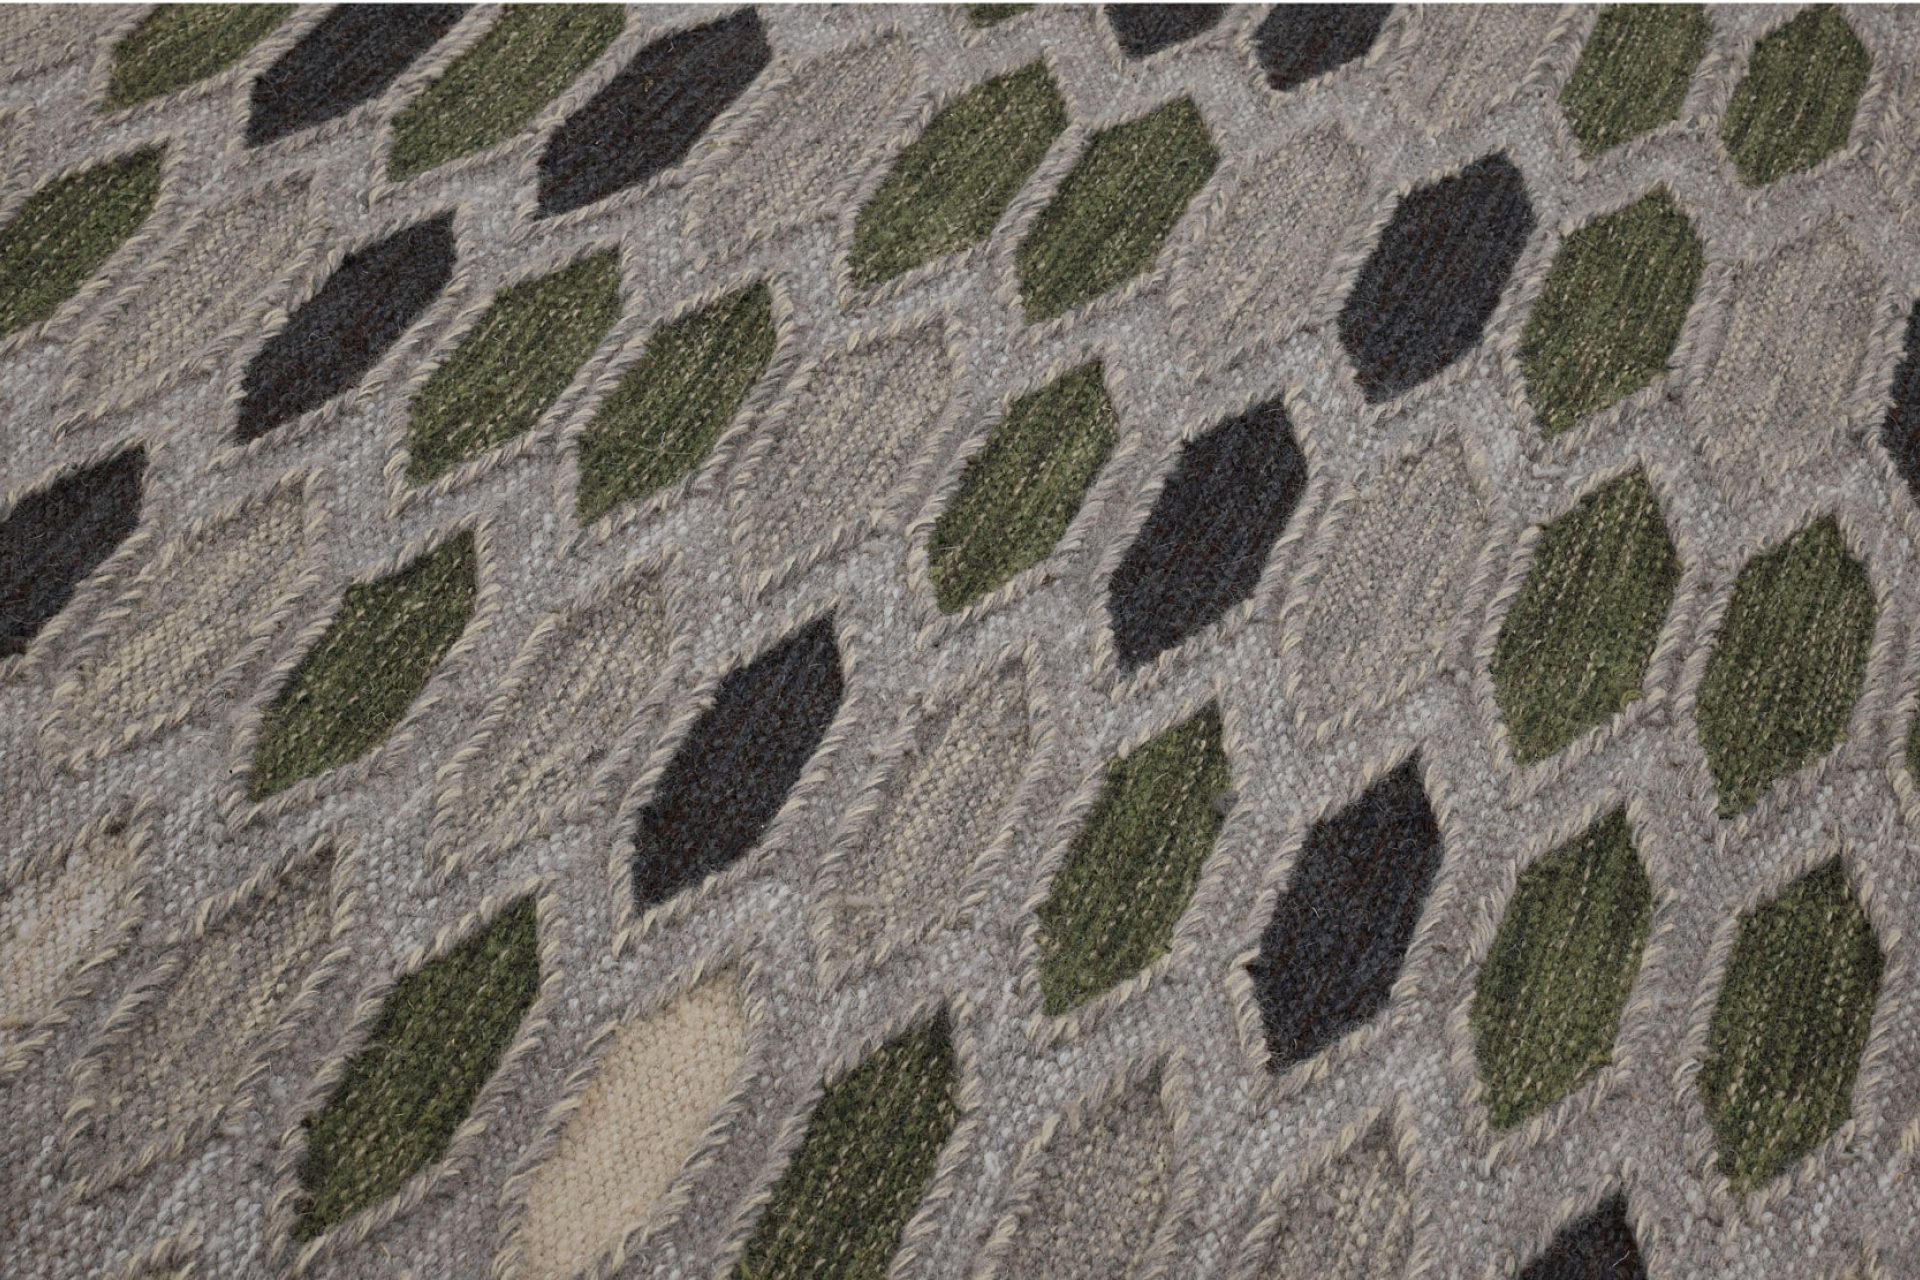 Aperçu d'une partie de tapis design avec des losange dans des tons beige, vert et gris